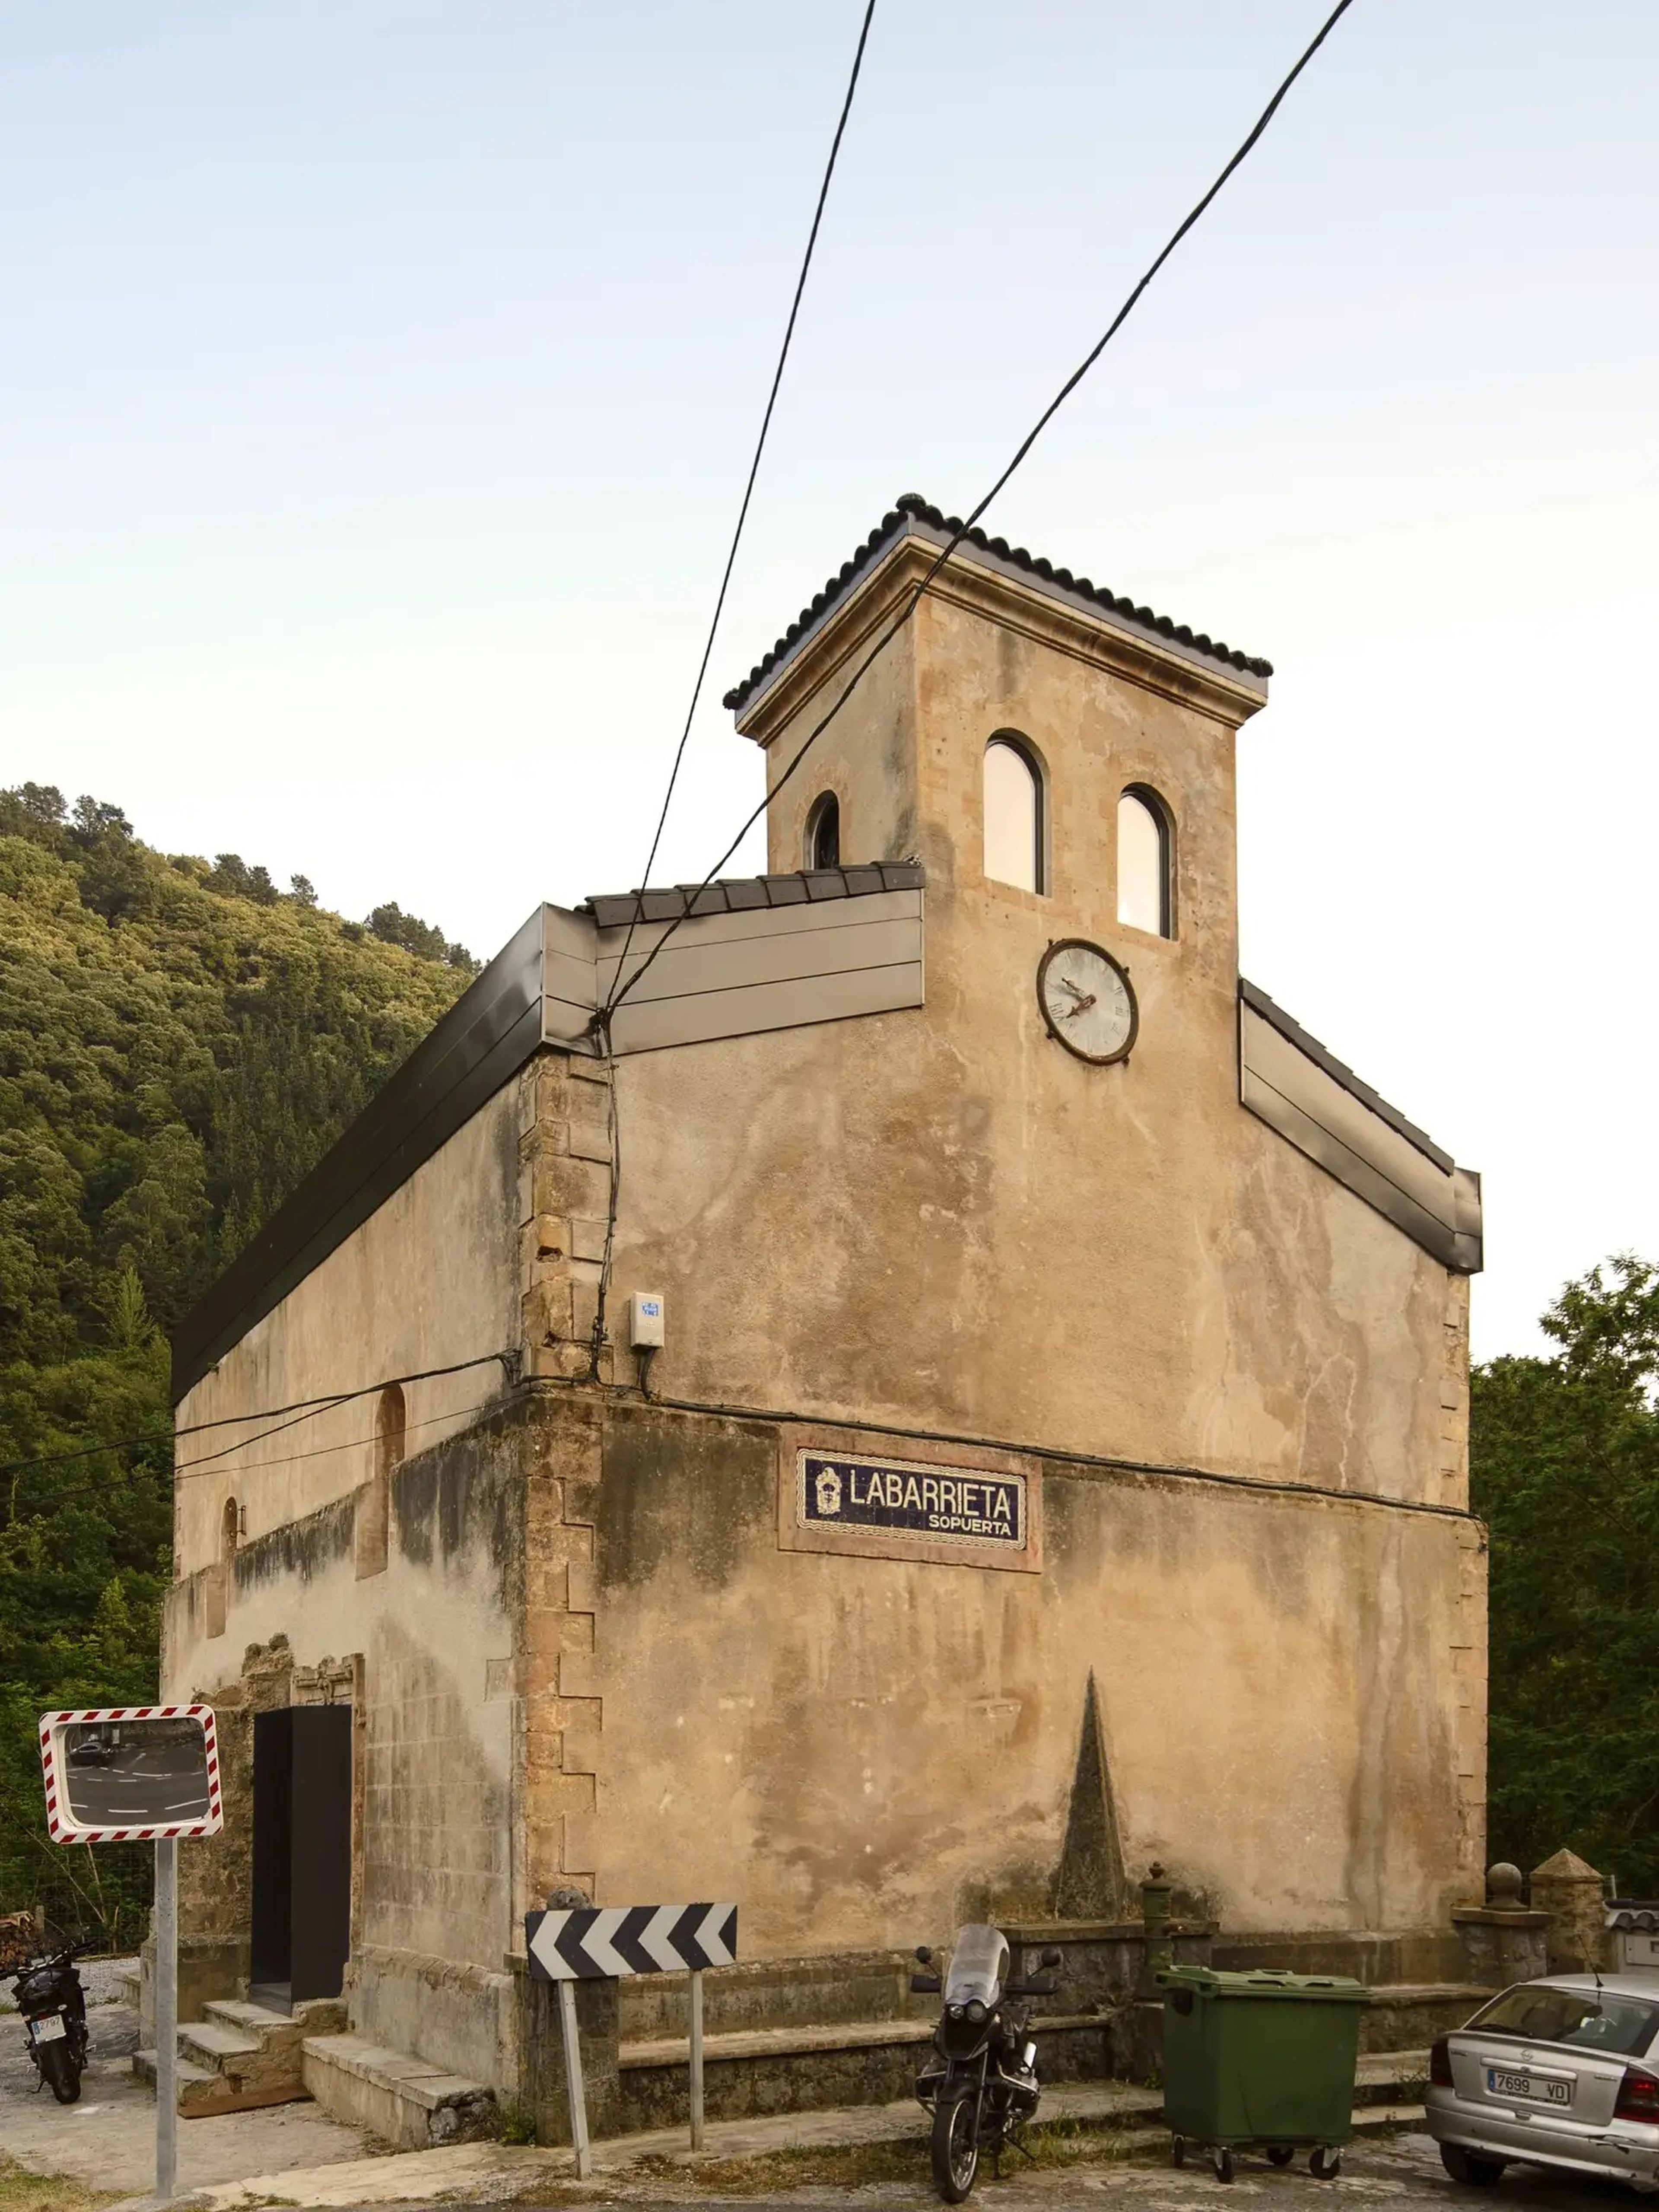 Antes de ser conocido como "La Iglesia de Tas", el edificio era una iglesia construida alrededor de 1530 en el País Vasco, al norte de España.